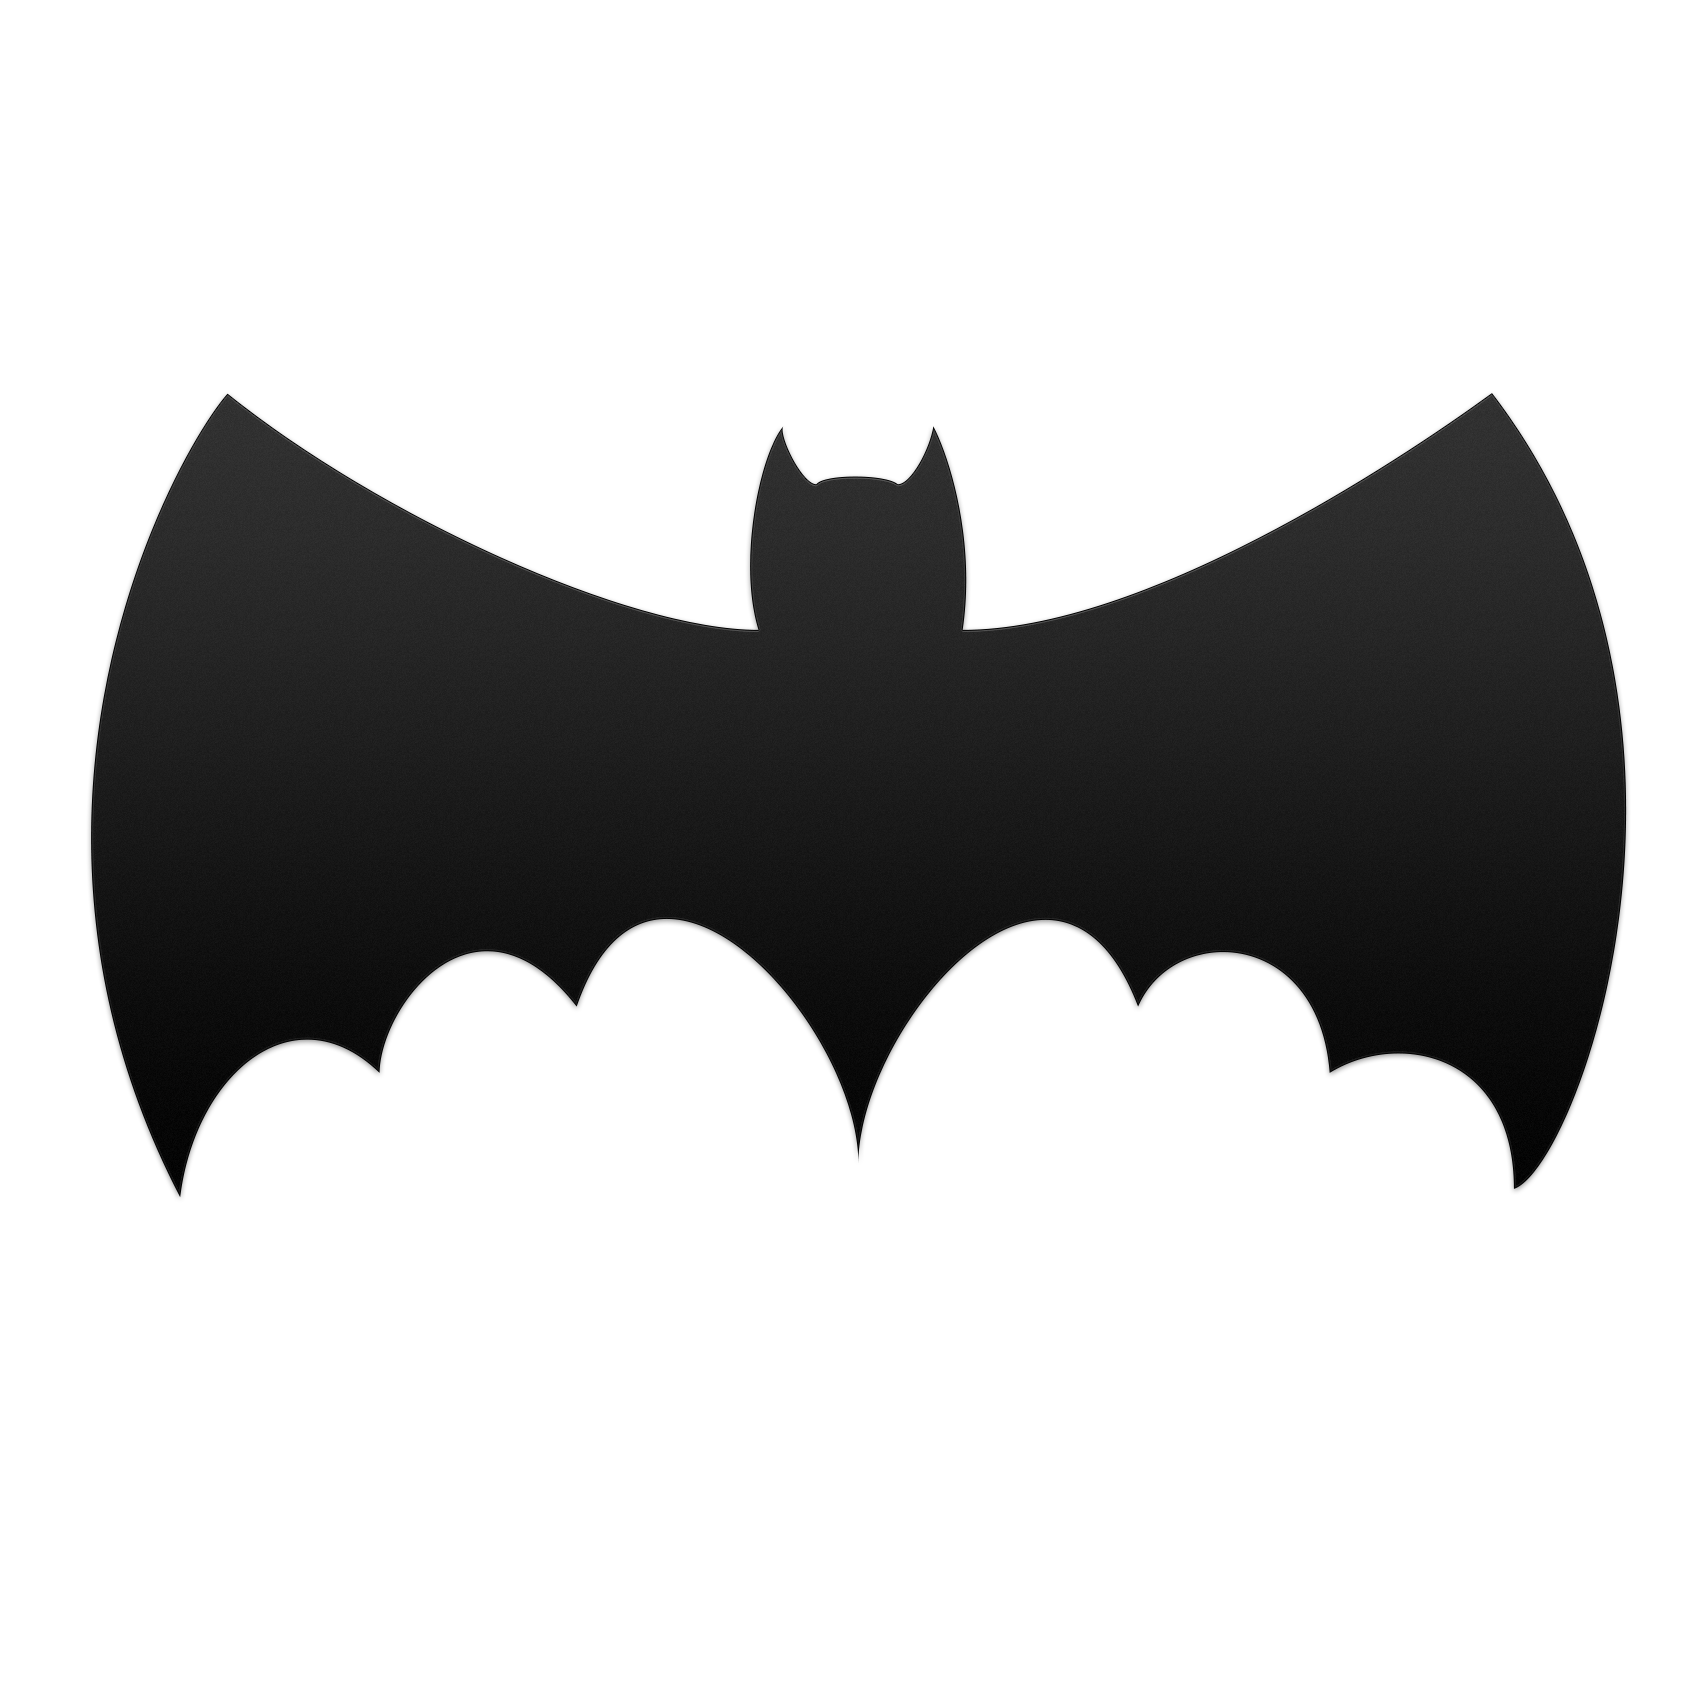 Batman Joker Symbol Bat-Signal Clip art - Batman png download - 1701*1701 -  Free Transparent Batman png Download. - Clip Art Library